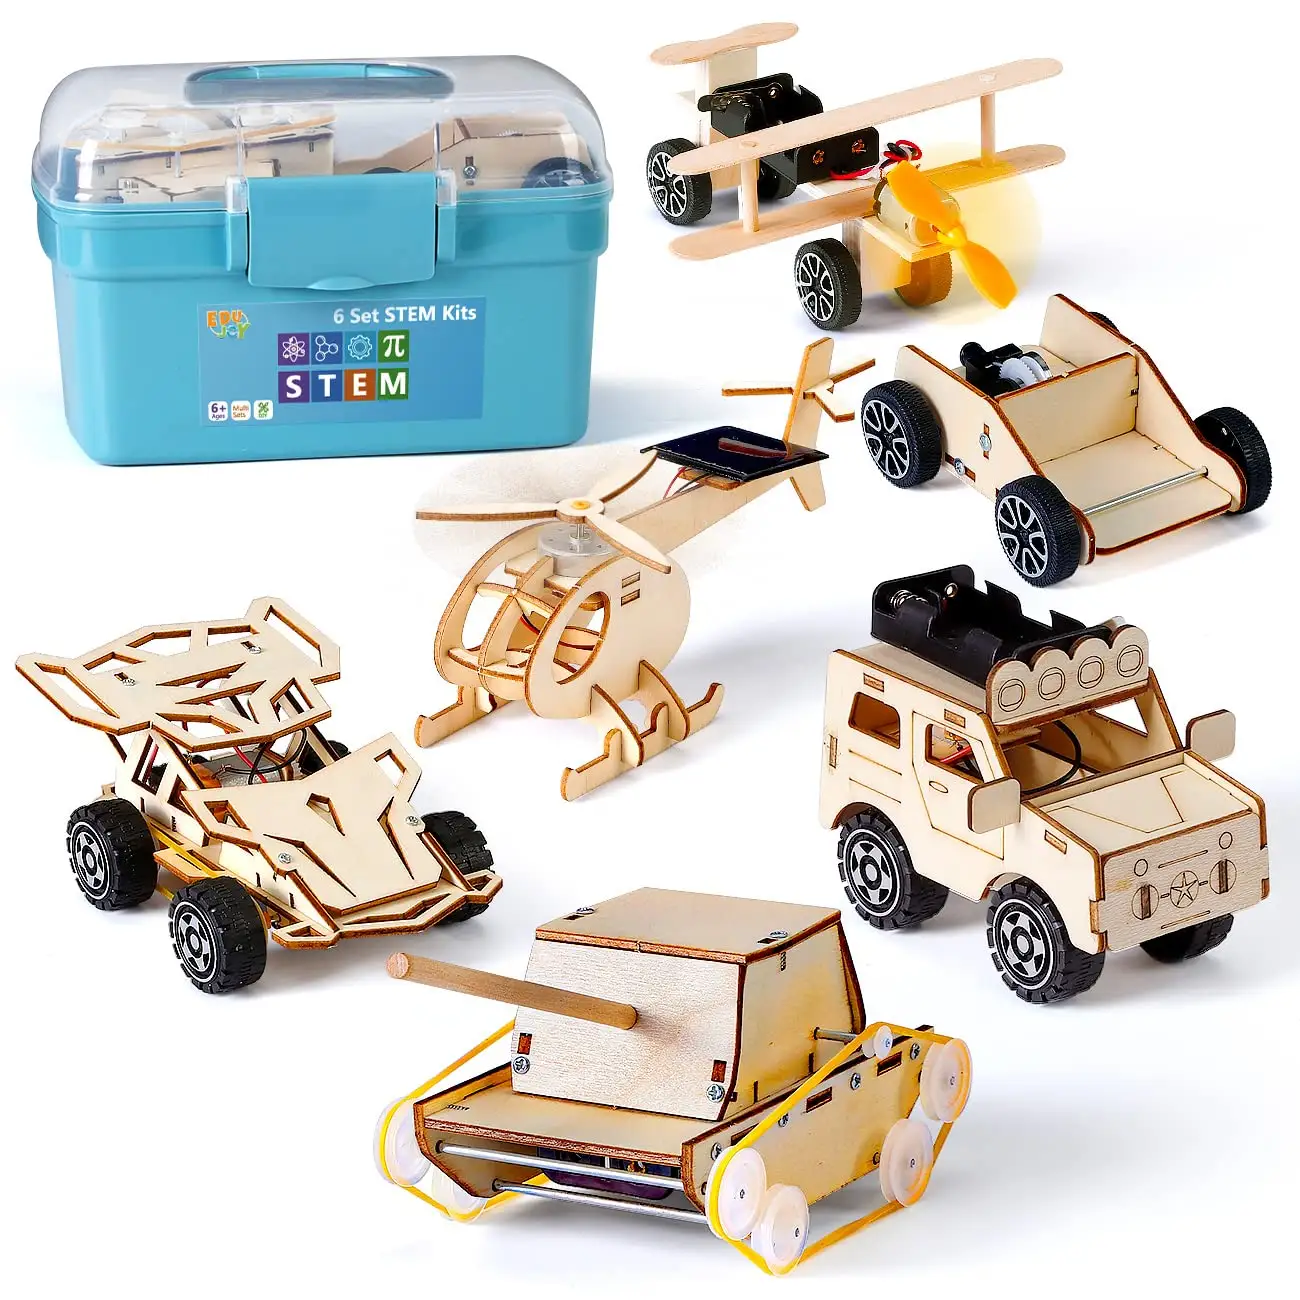 6 en 1 STEM Projects Kits De ciencia manualidades para niños de 8 a 12 años Kits de coche modelo de madera DIY 3D rompecabezas de construcción niños educativos